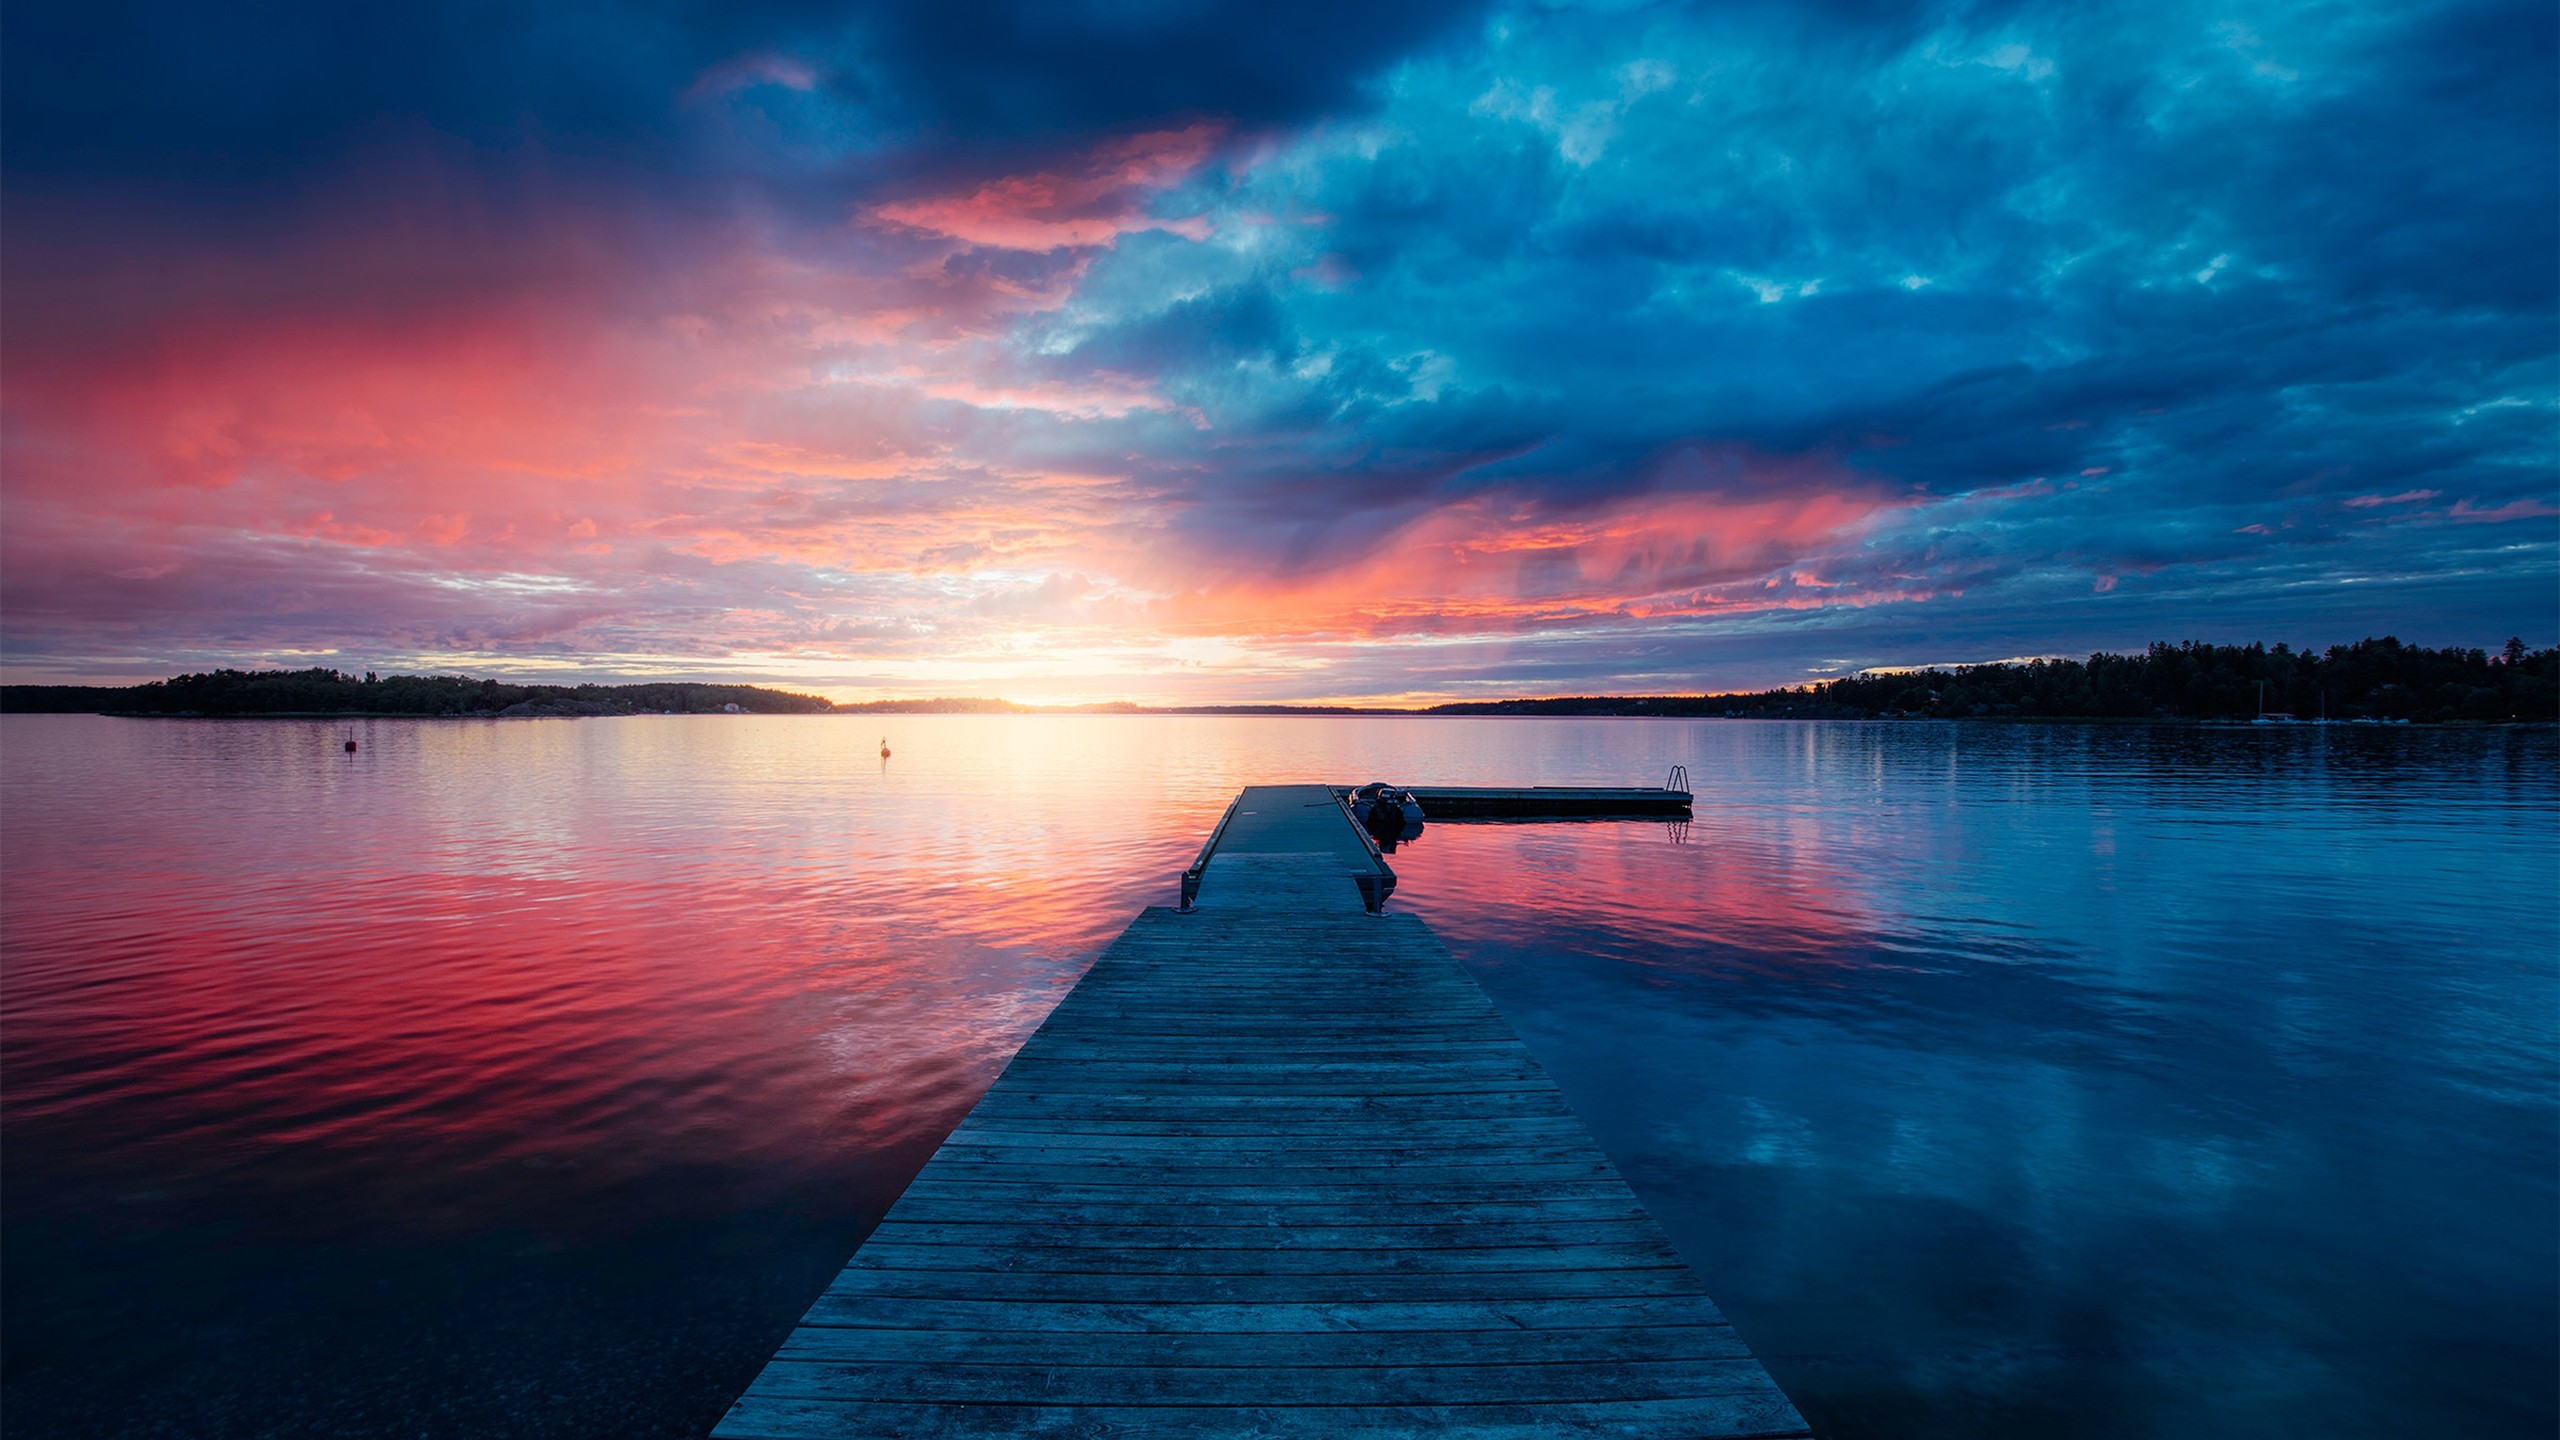 Sunset Lake Scenery